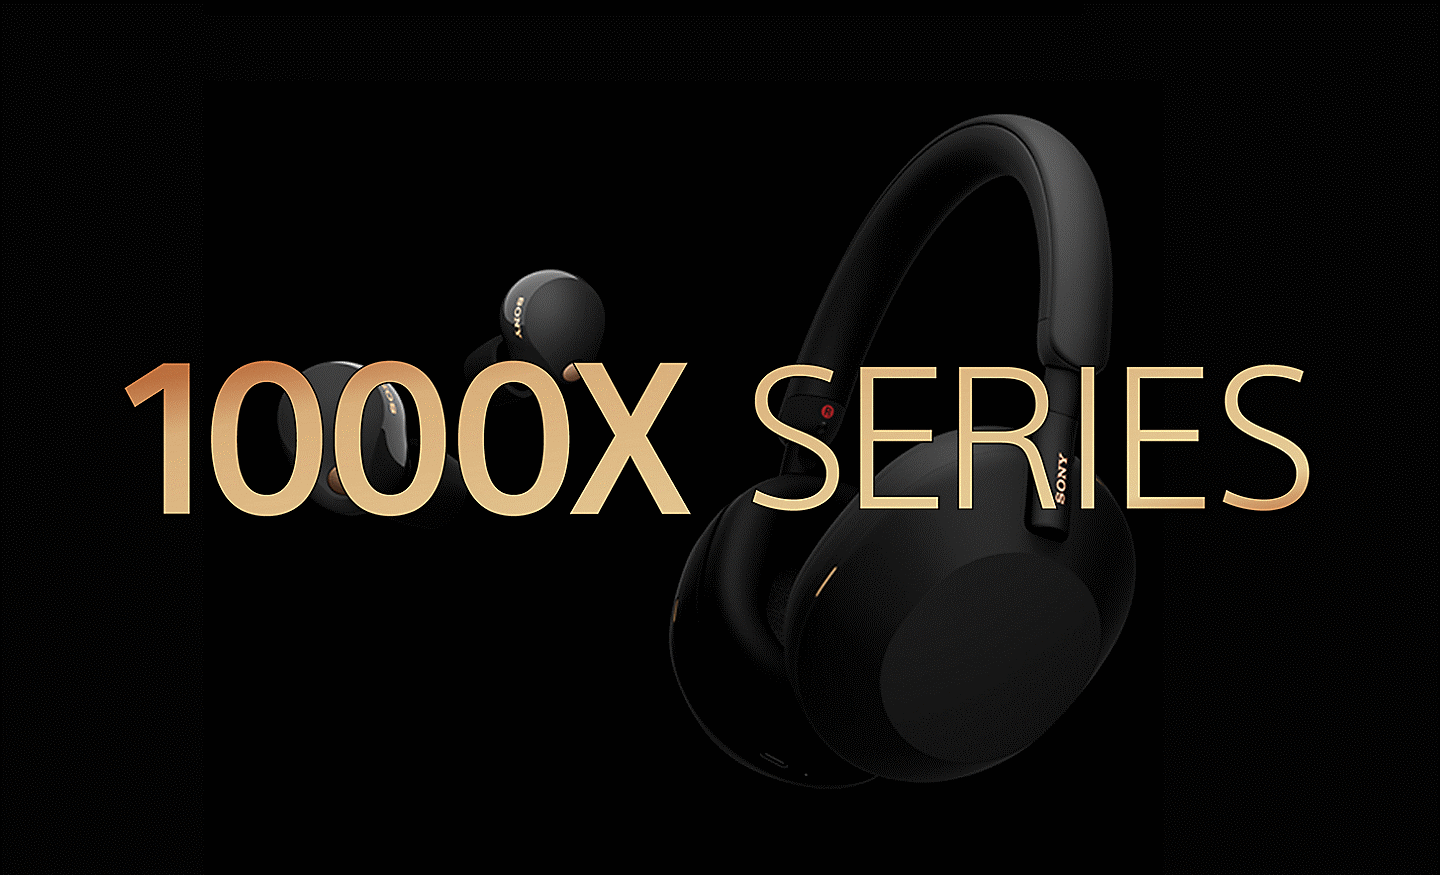 תמונה של שני זוגות אוזניות Sony על רקע שחור, עם הכיתוב "סדרה 1000X" מלפנים בצבע זהב